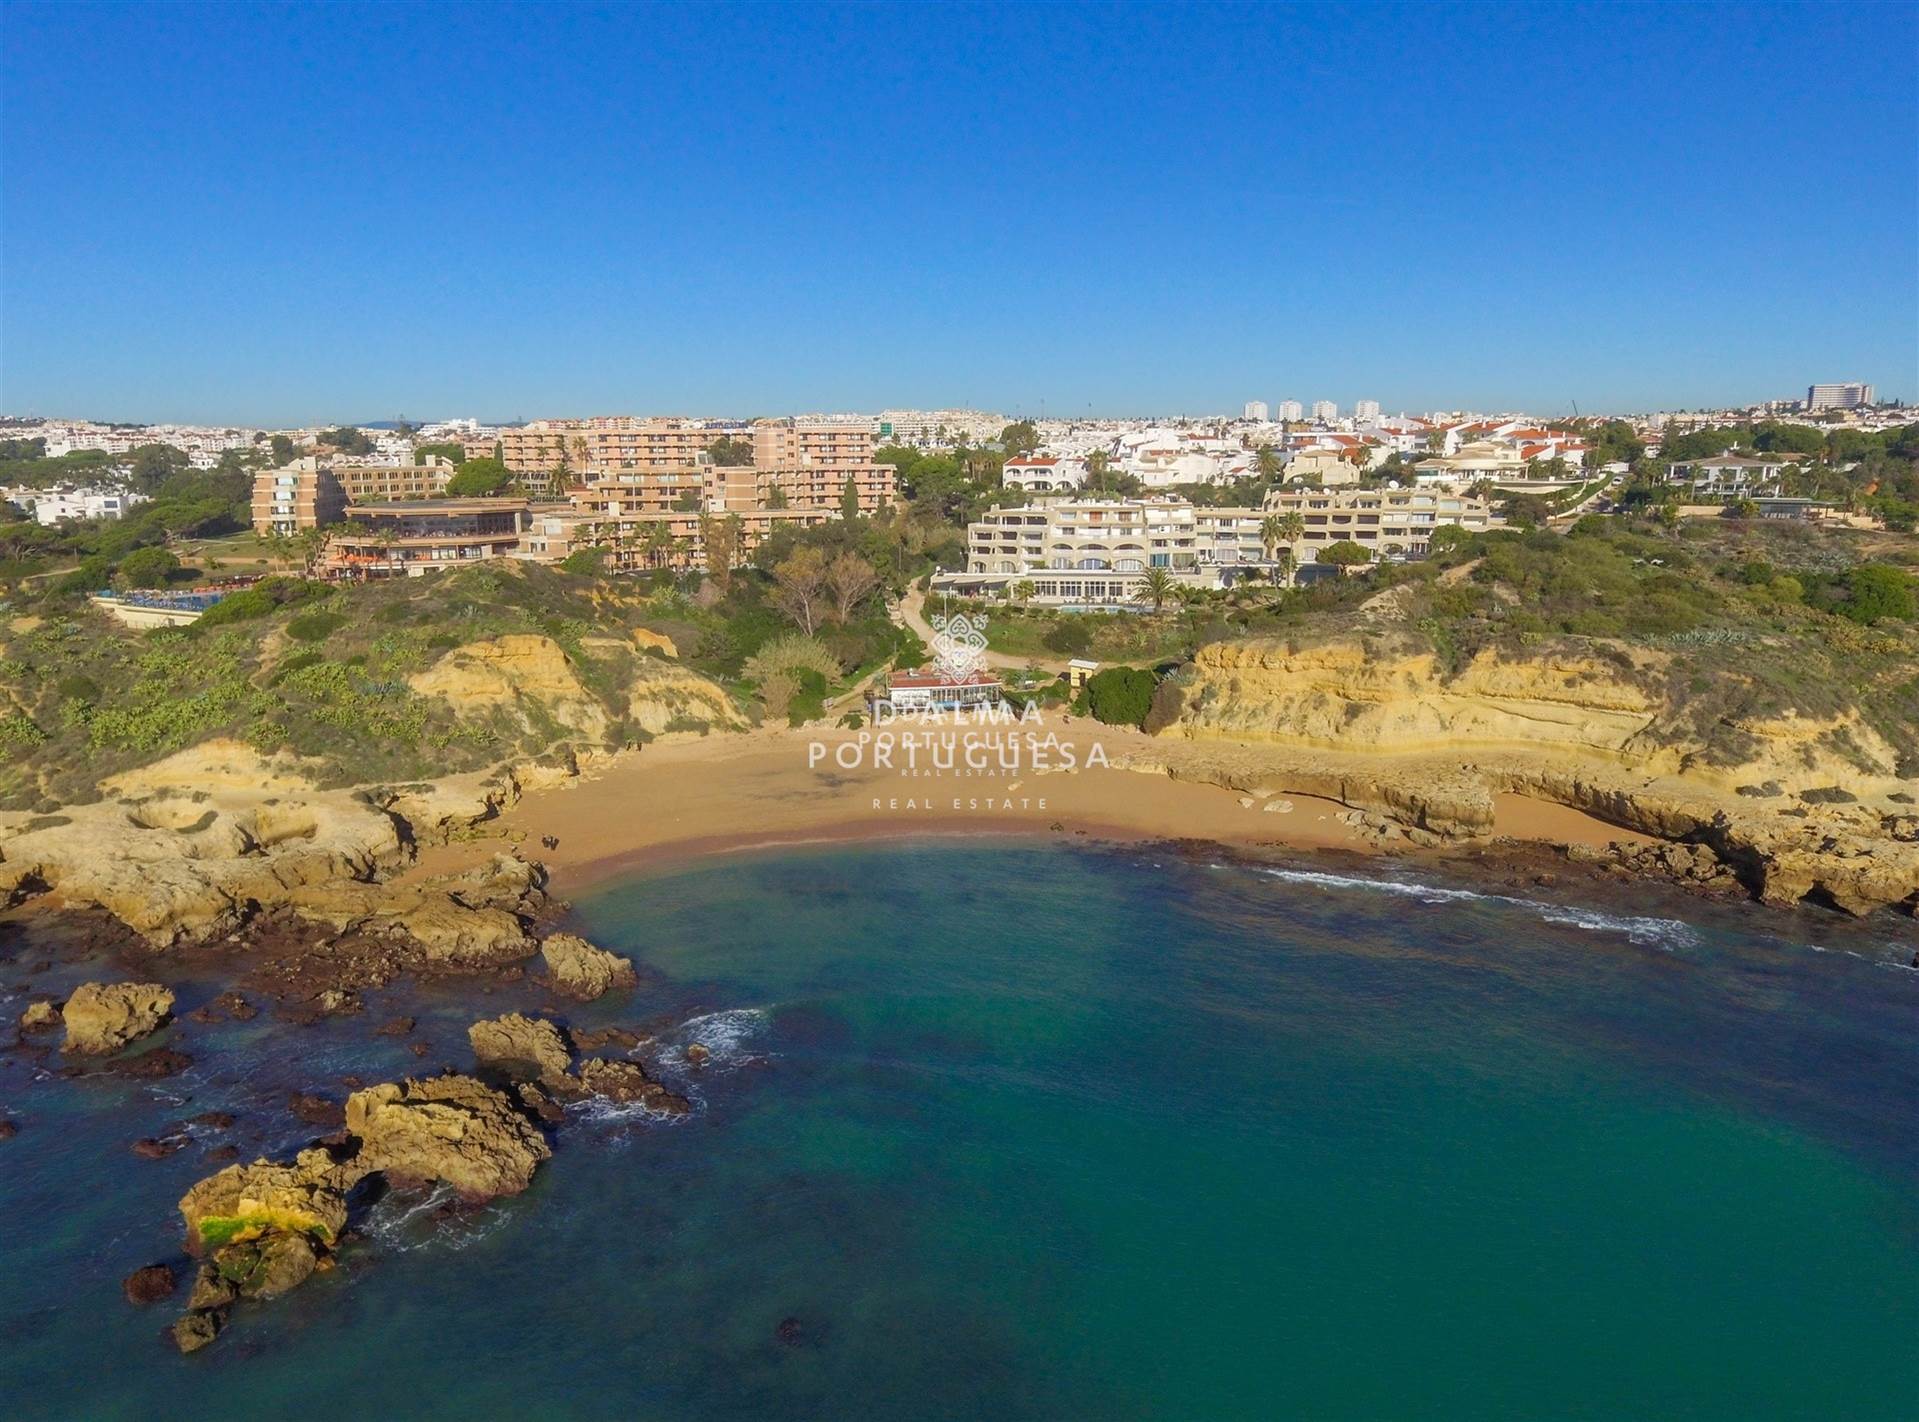 Praia dos Aveiros,DAlma Oceano,apartamento moderno,espacioso,Algarve,playa